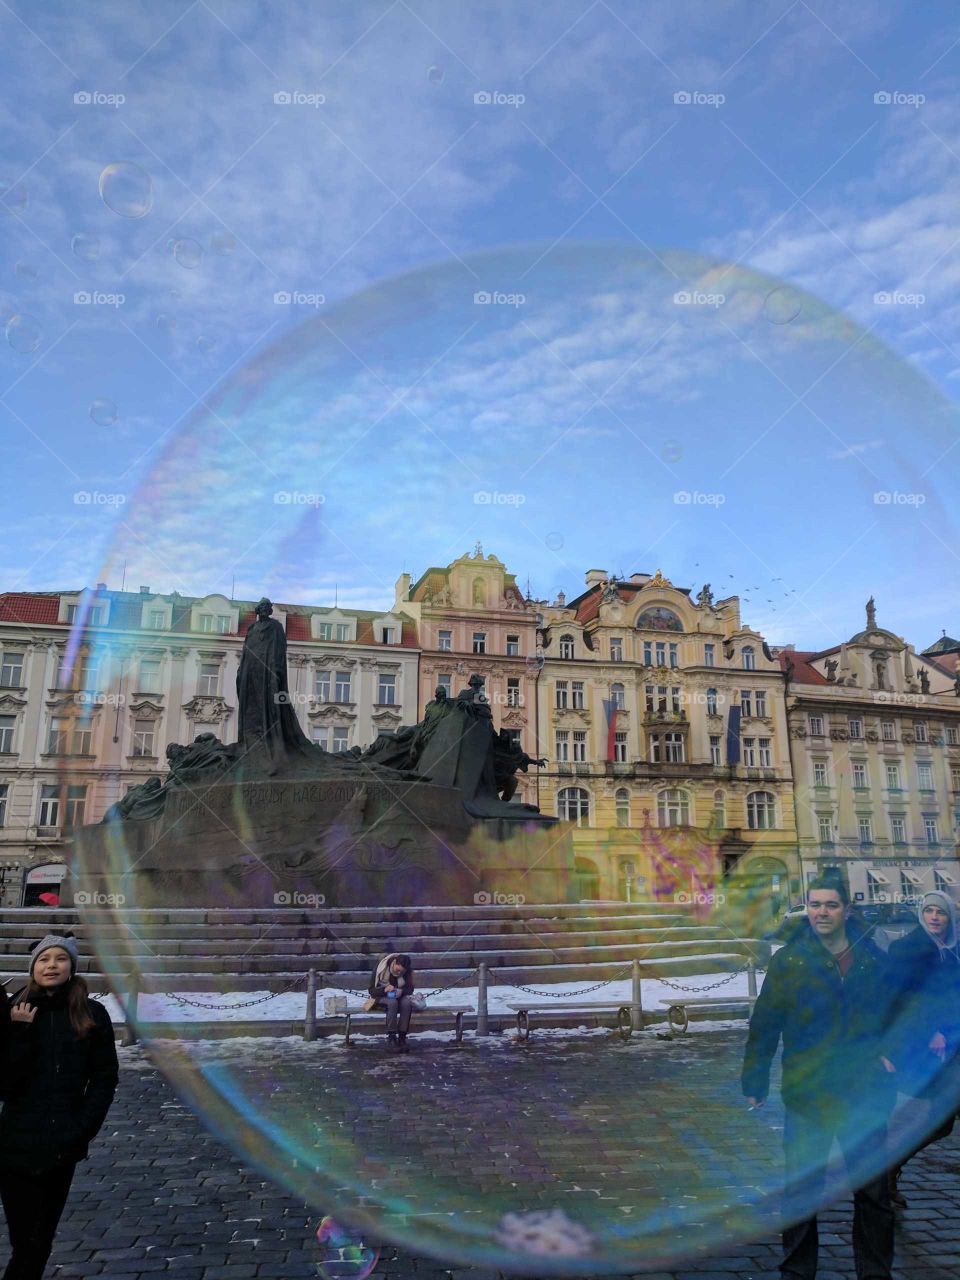 statue in a bubble